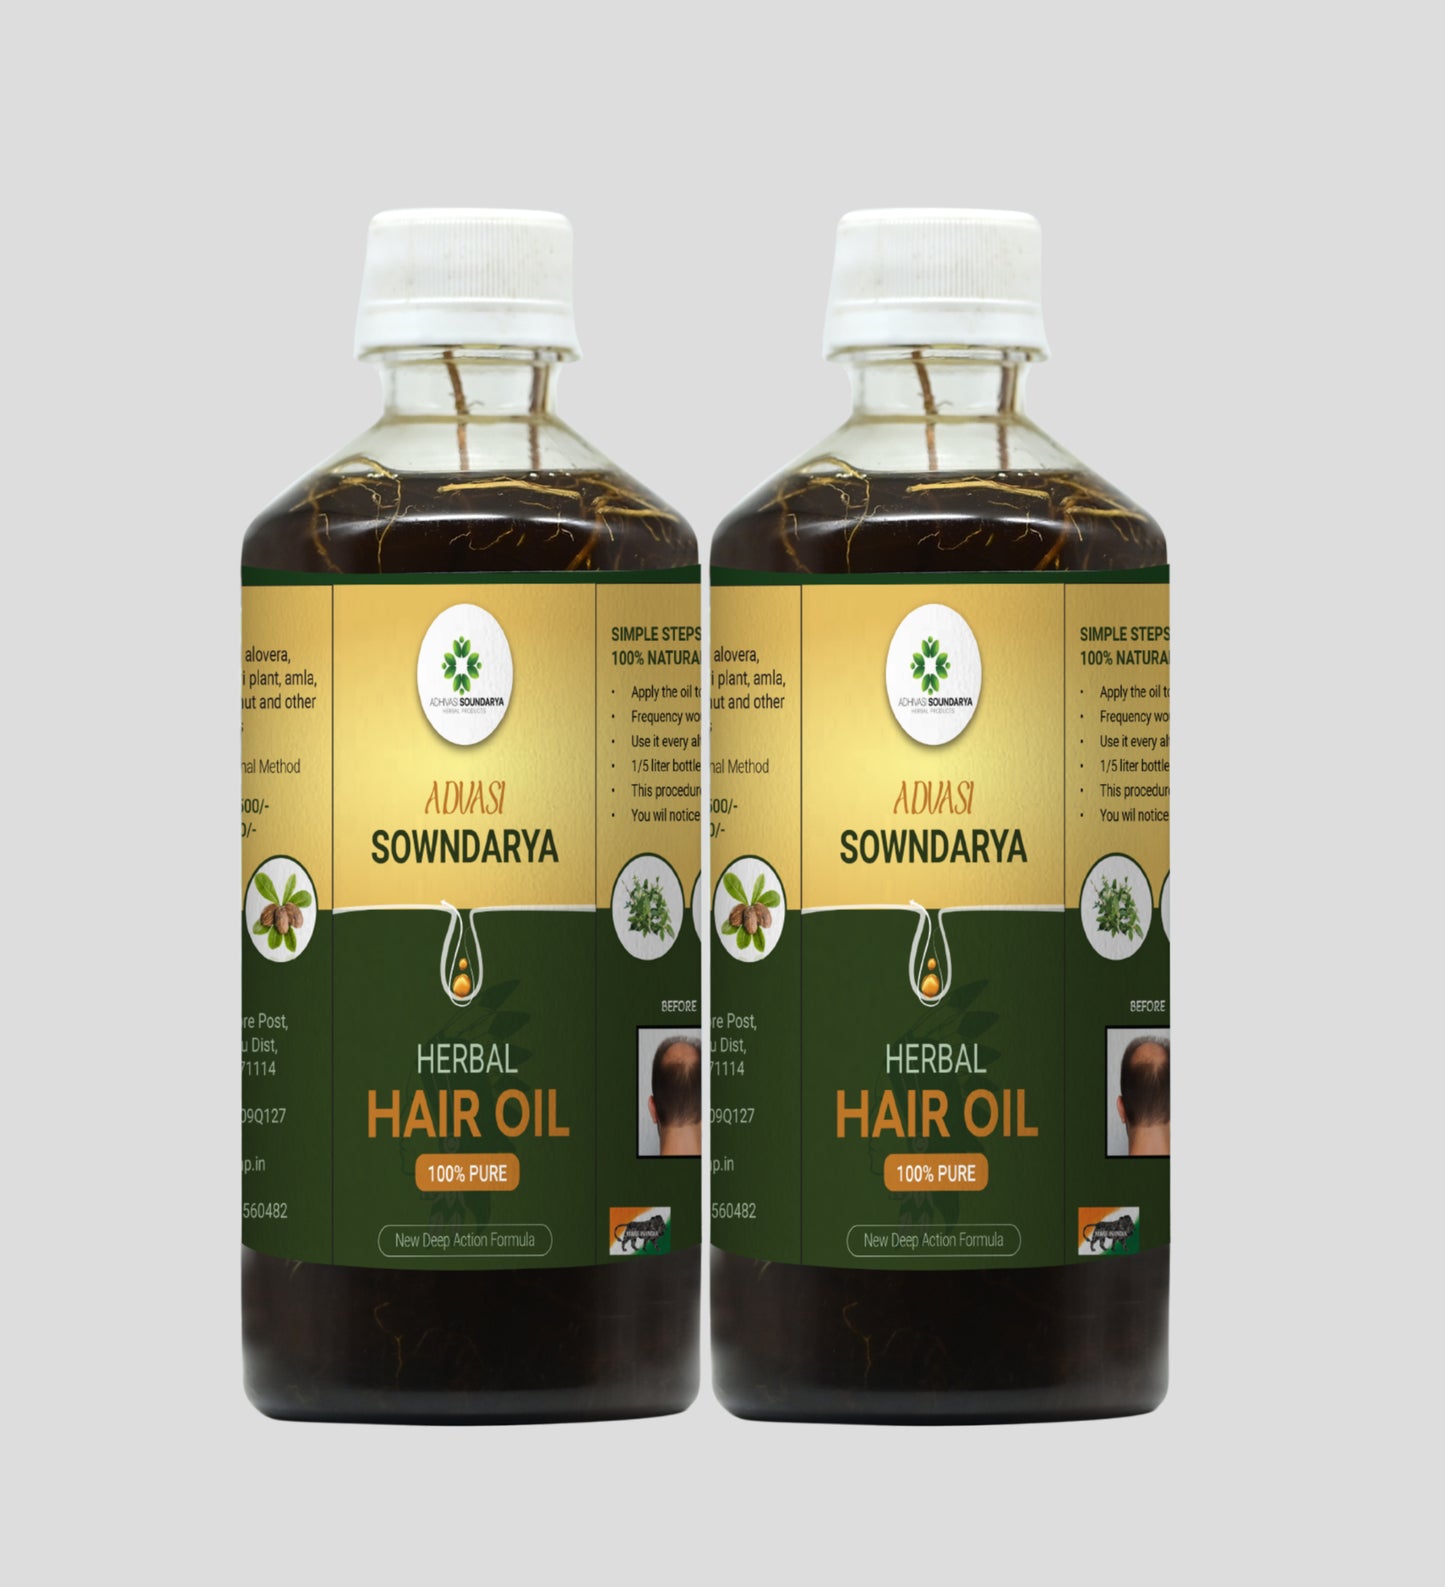 Adivasi Soundarya Herbal Hair Oil